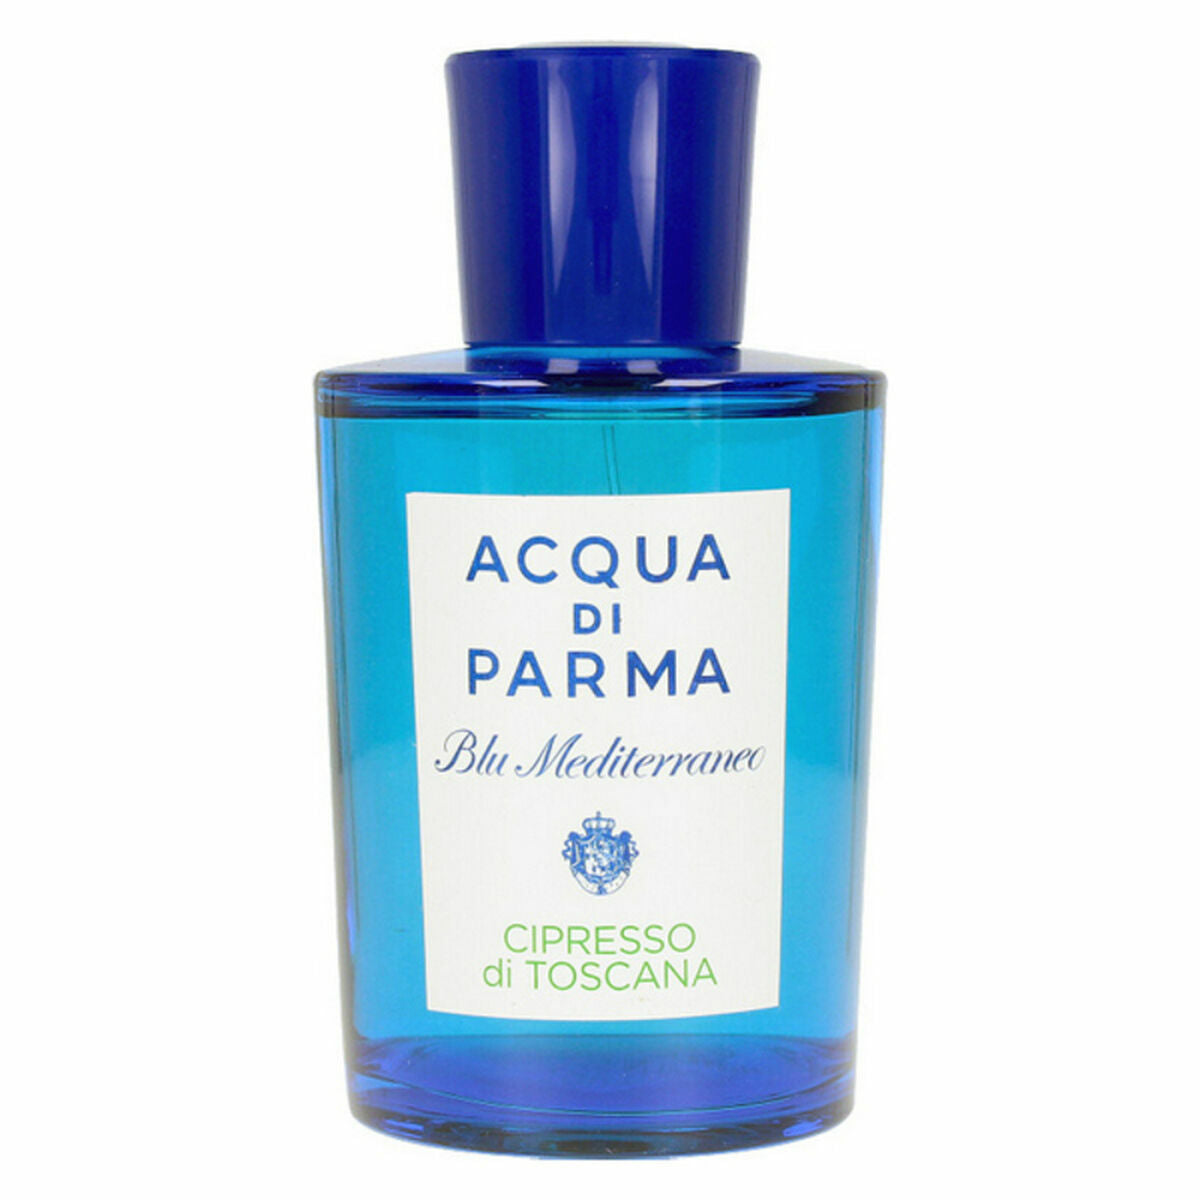 Unisex Perfume Acqua Di Parma Blu Mediterraneo Cipresso Di Toscana EDT 150 ml (1 Unit)